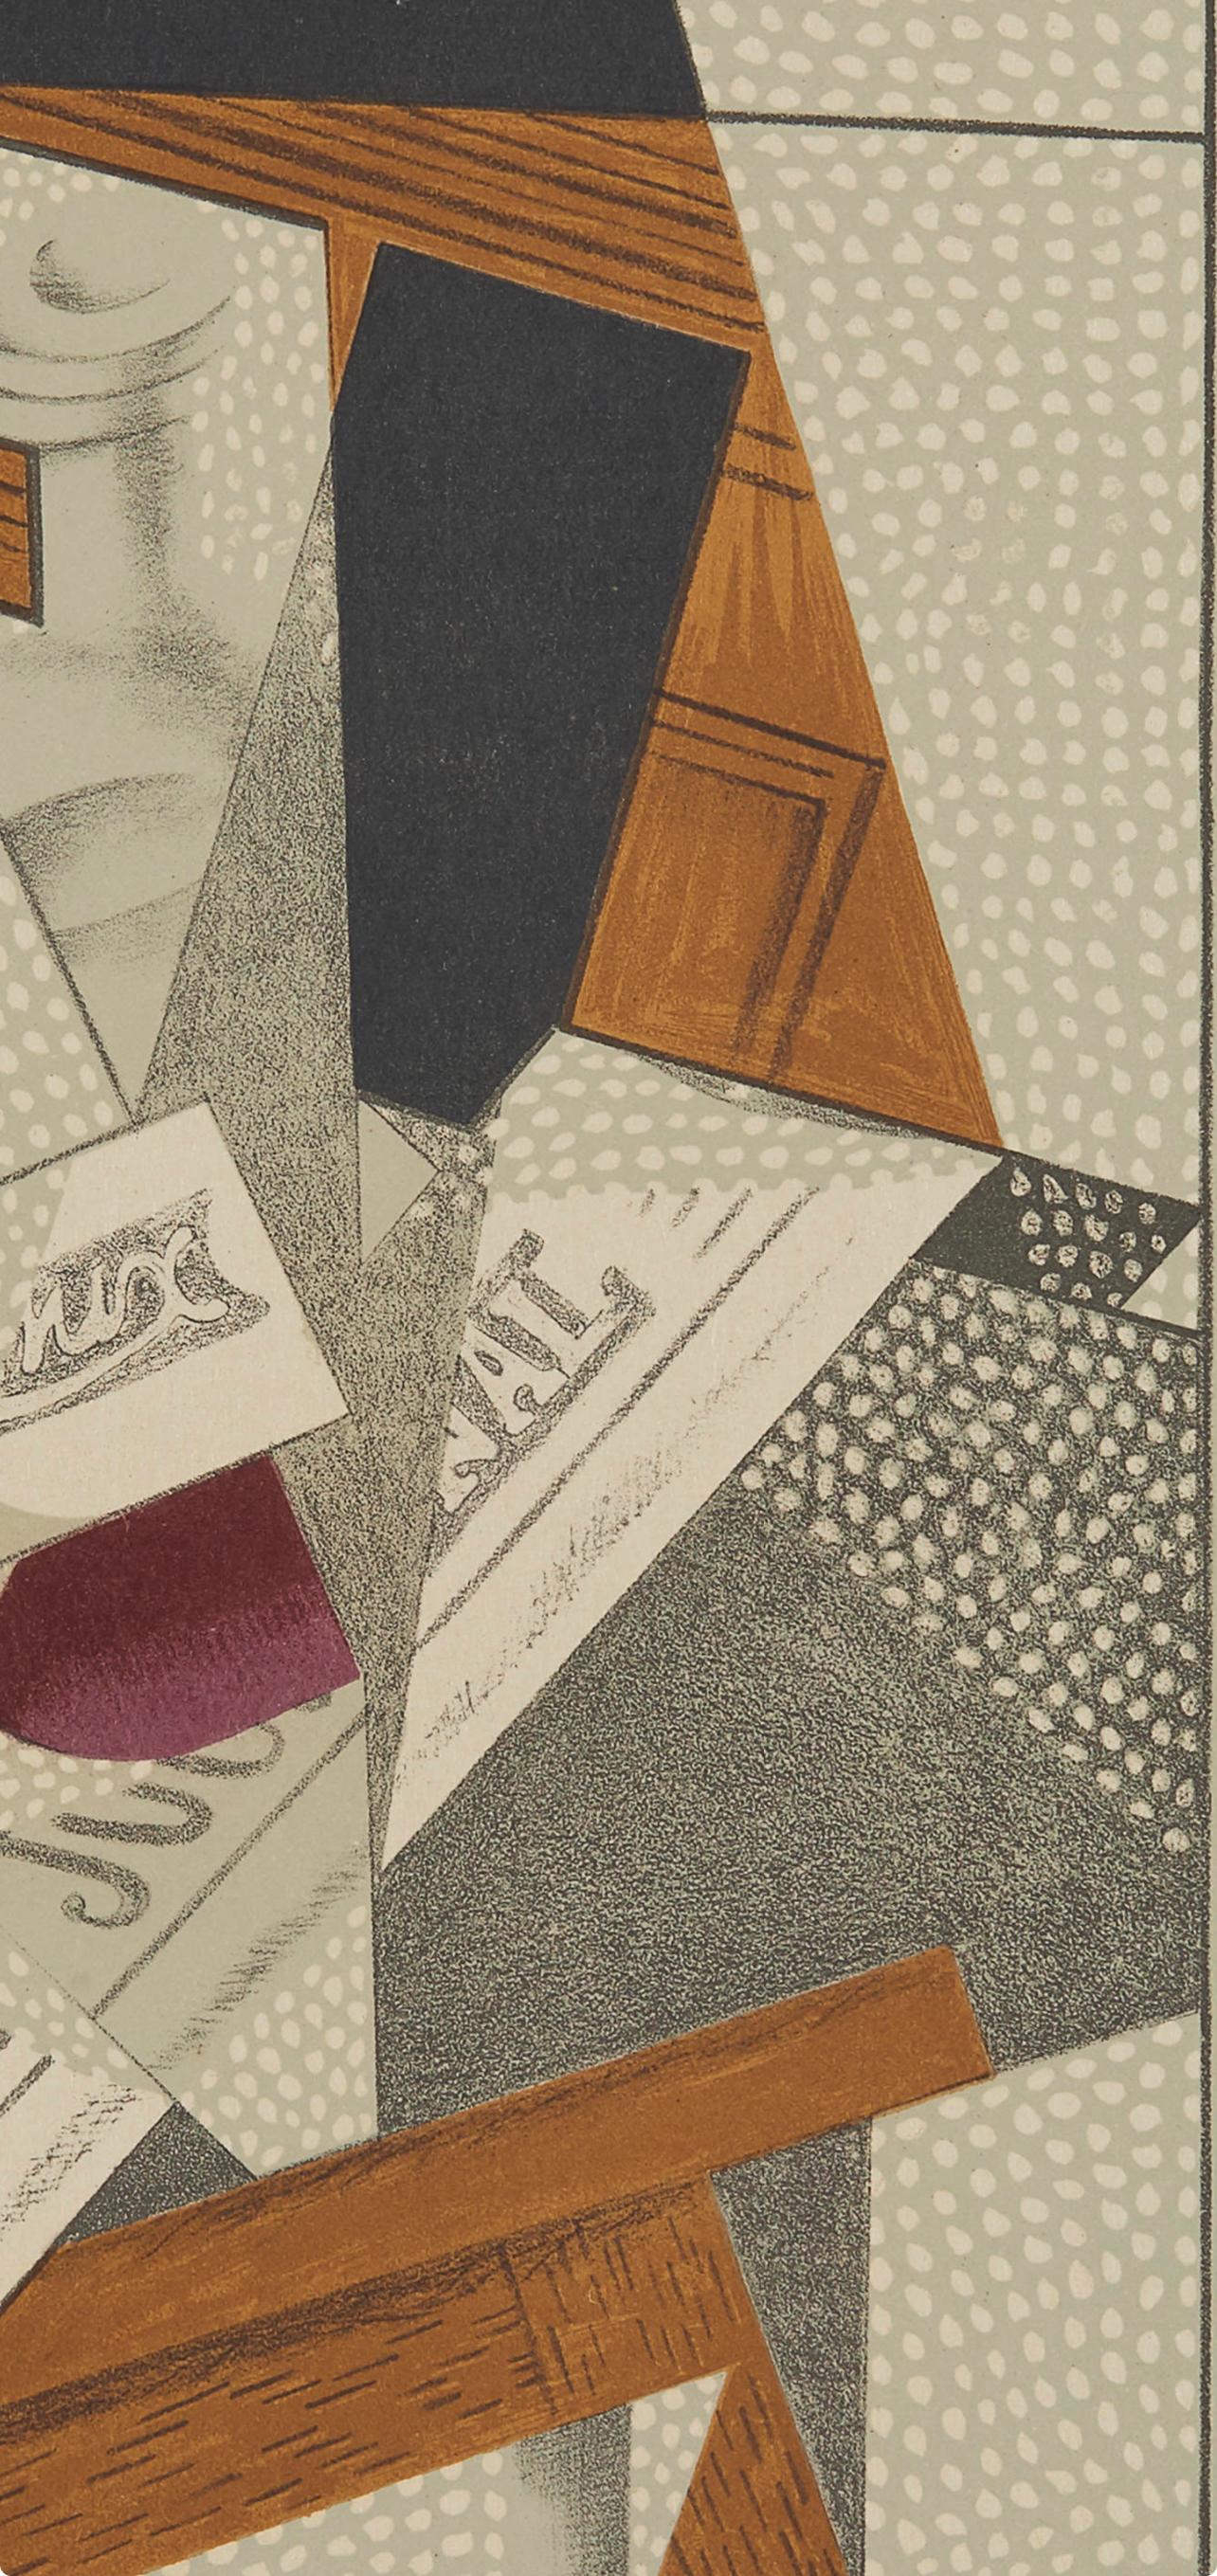 Gris, Bouteille (Kahnweiler 1969), Au Soleil du Plafond (after) - Print by Juan Gris